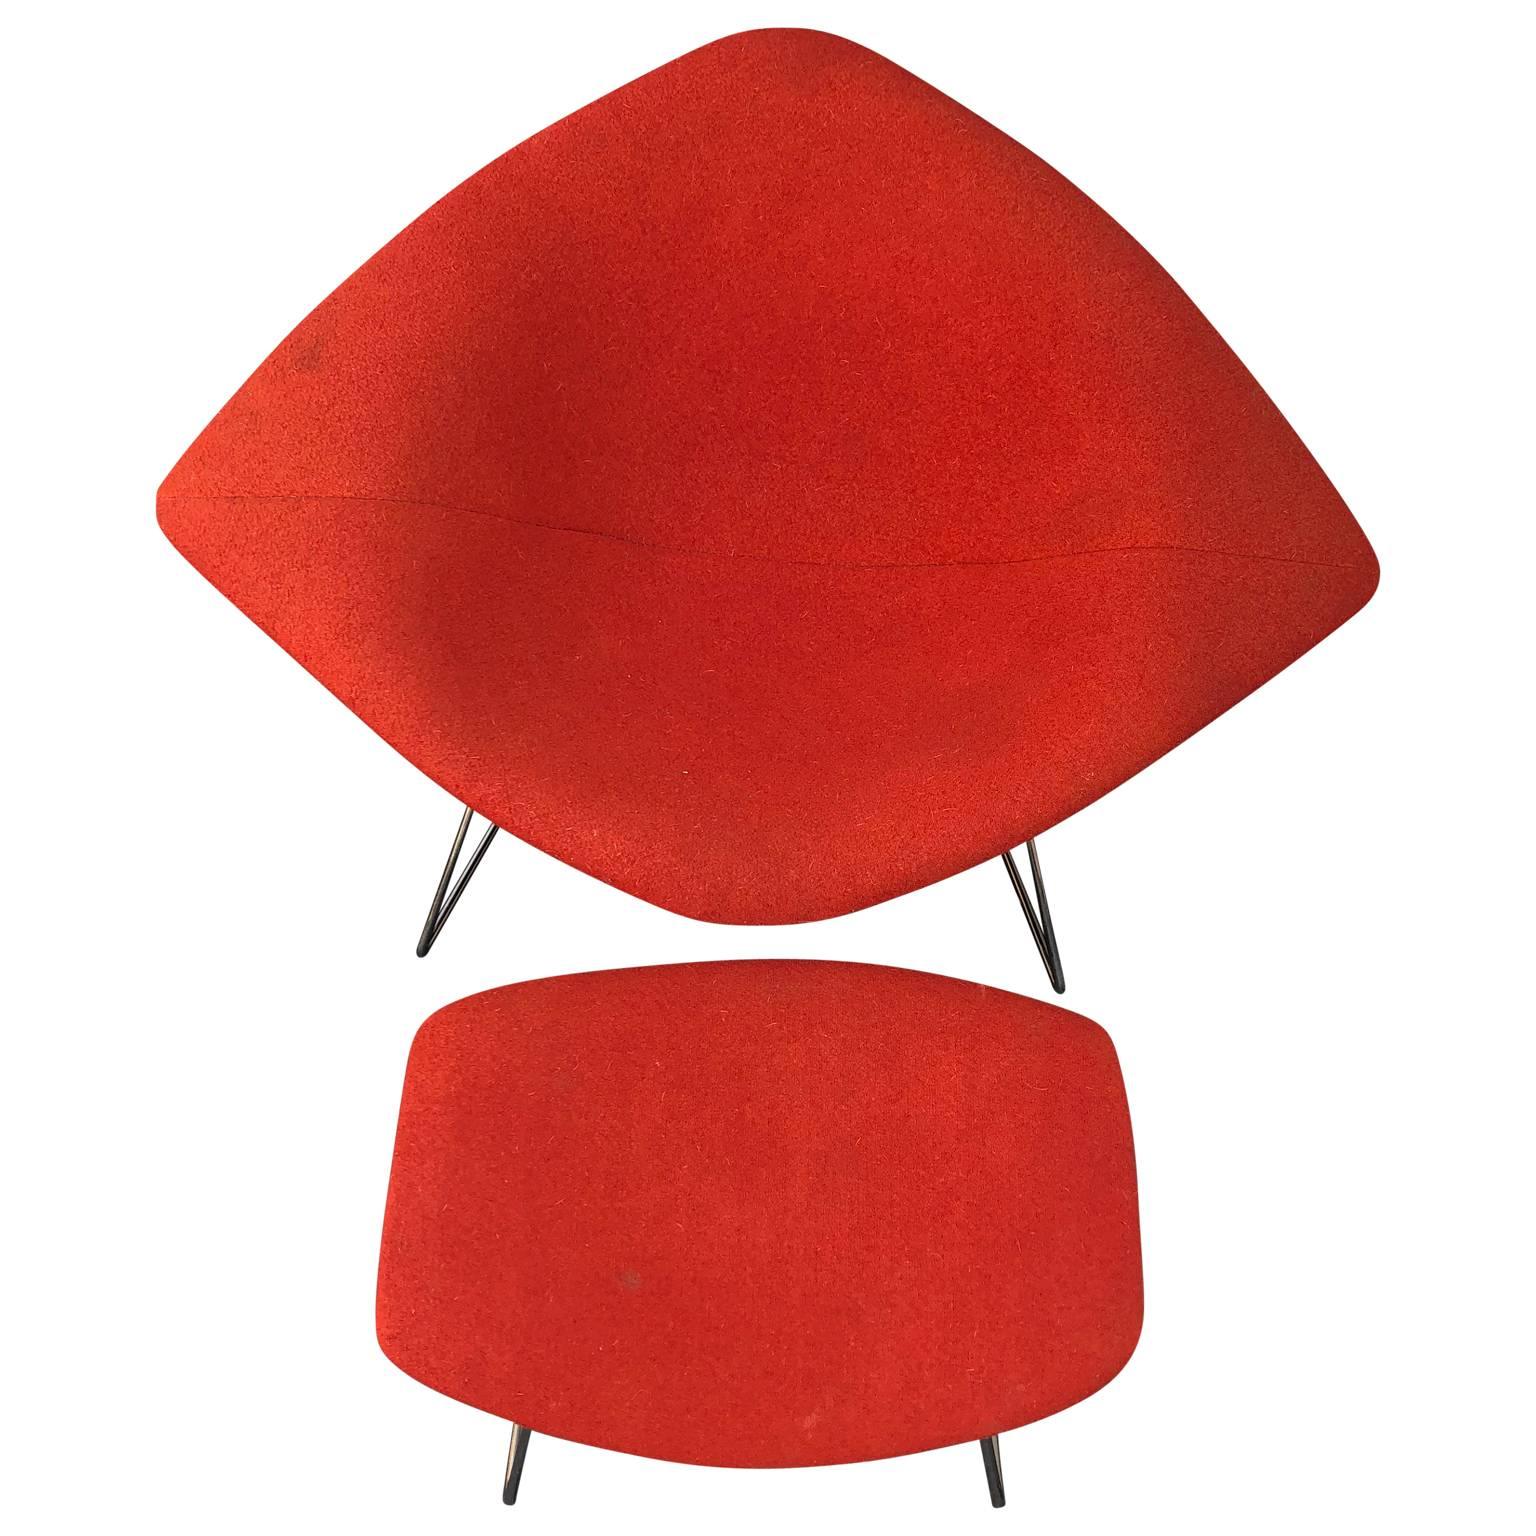 Grande chaise chromée en forme de diamant conçue par Harry Bertoia pour Knoll en 1952. 
Le président  et l'ottoman sont recouverts du tissu rouge d'origine. Les chaises en fil de fer de Harry Bertoia sont parmi les réalisations les plus reconnues du